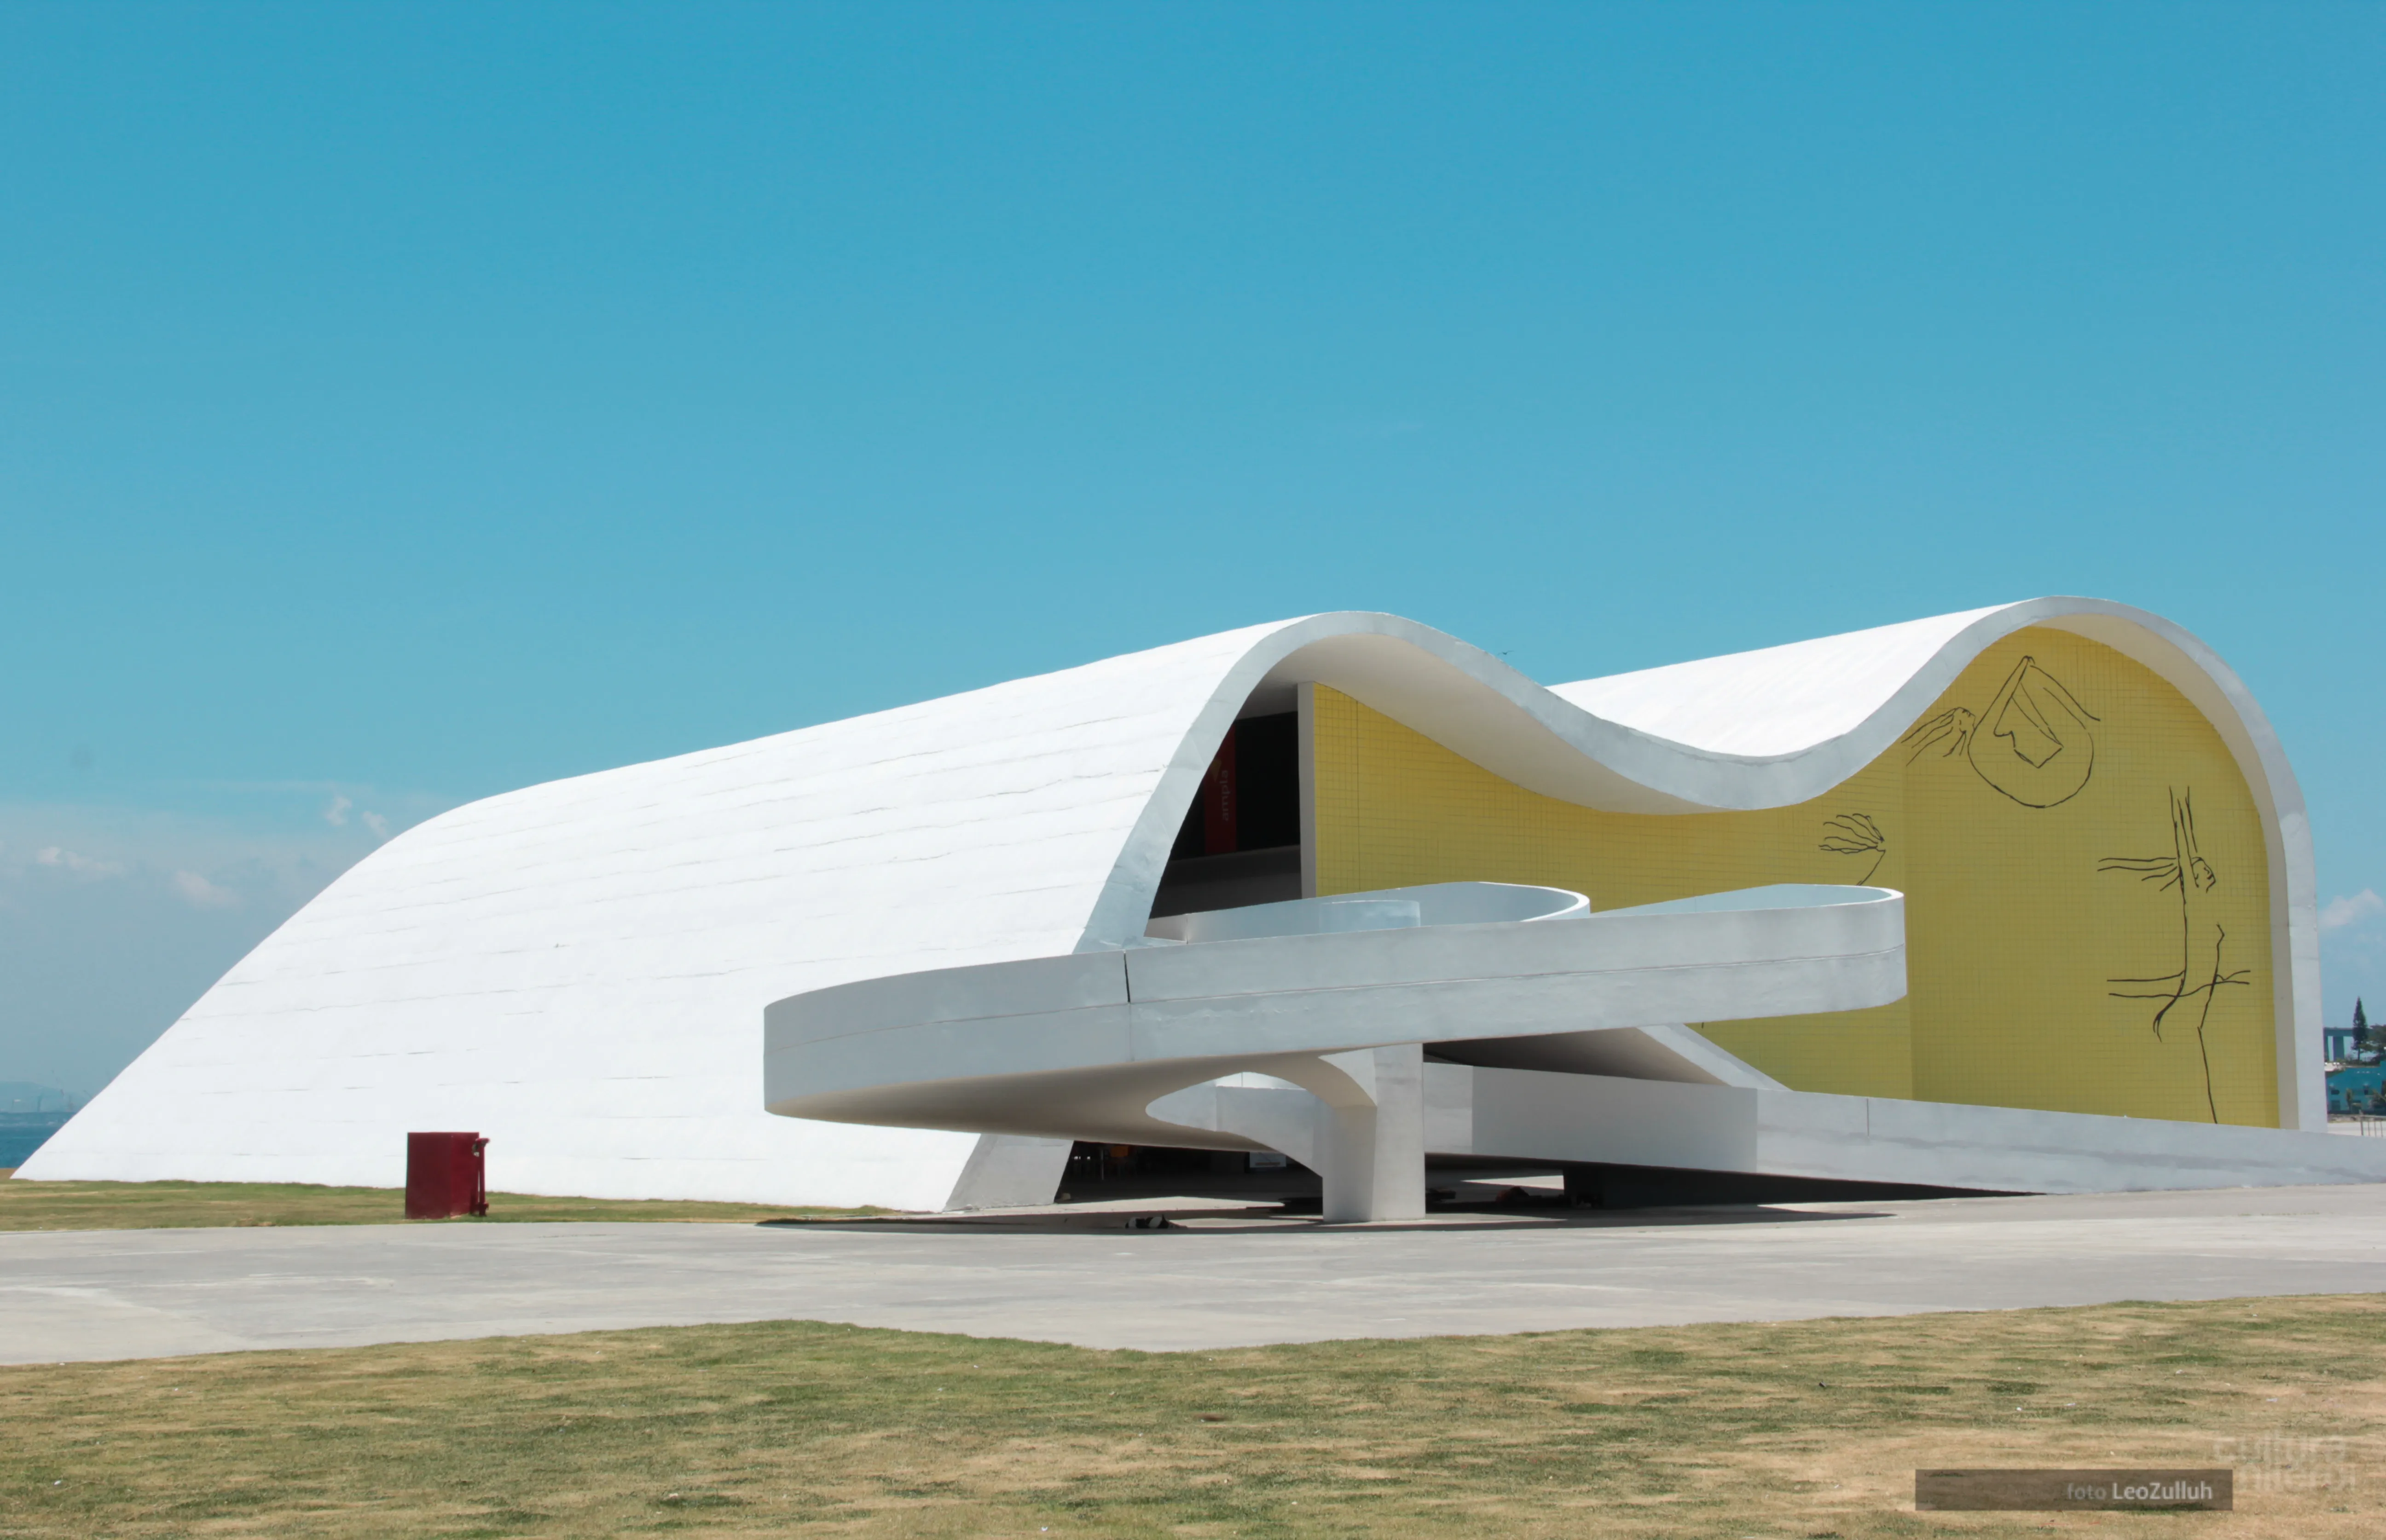 Teatro Popular Oscar Niemeyer